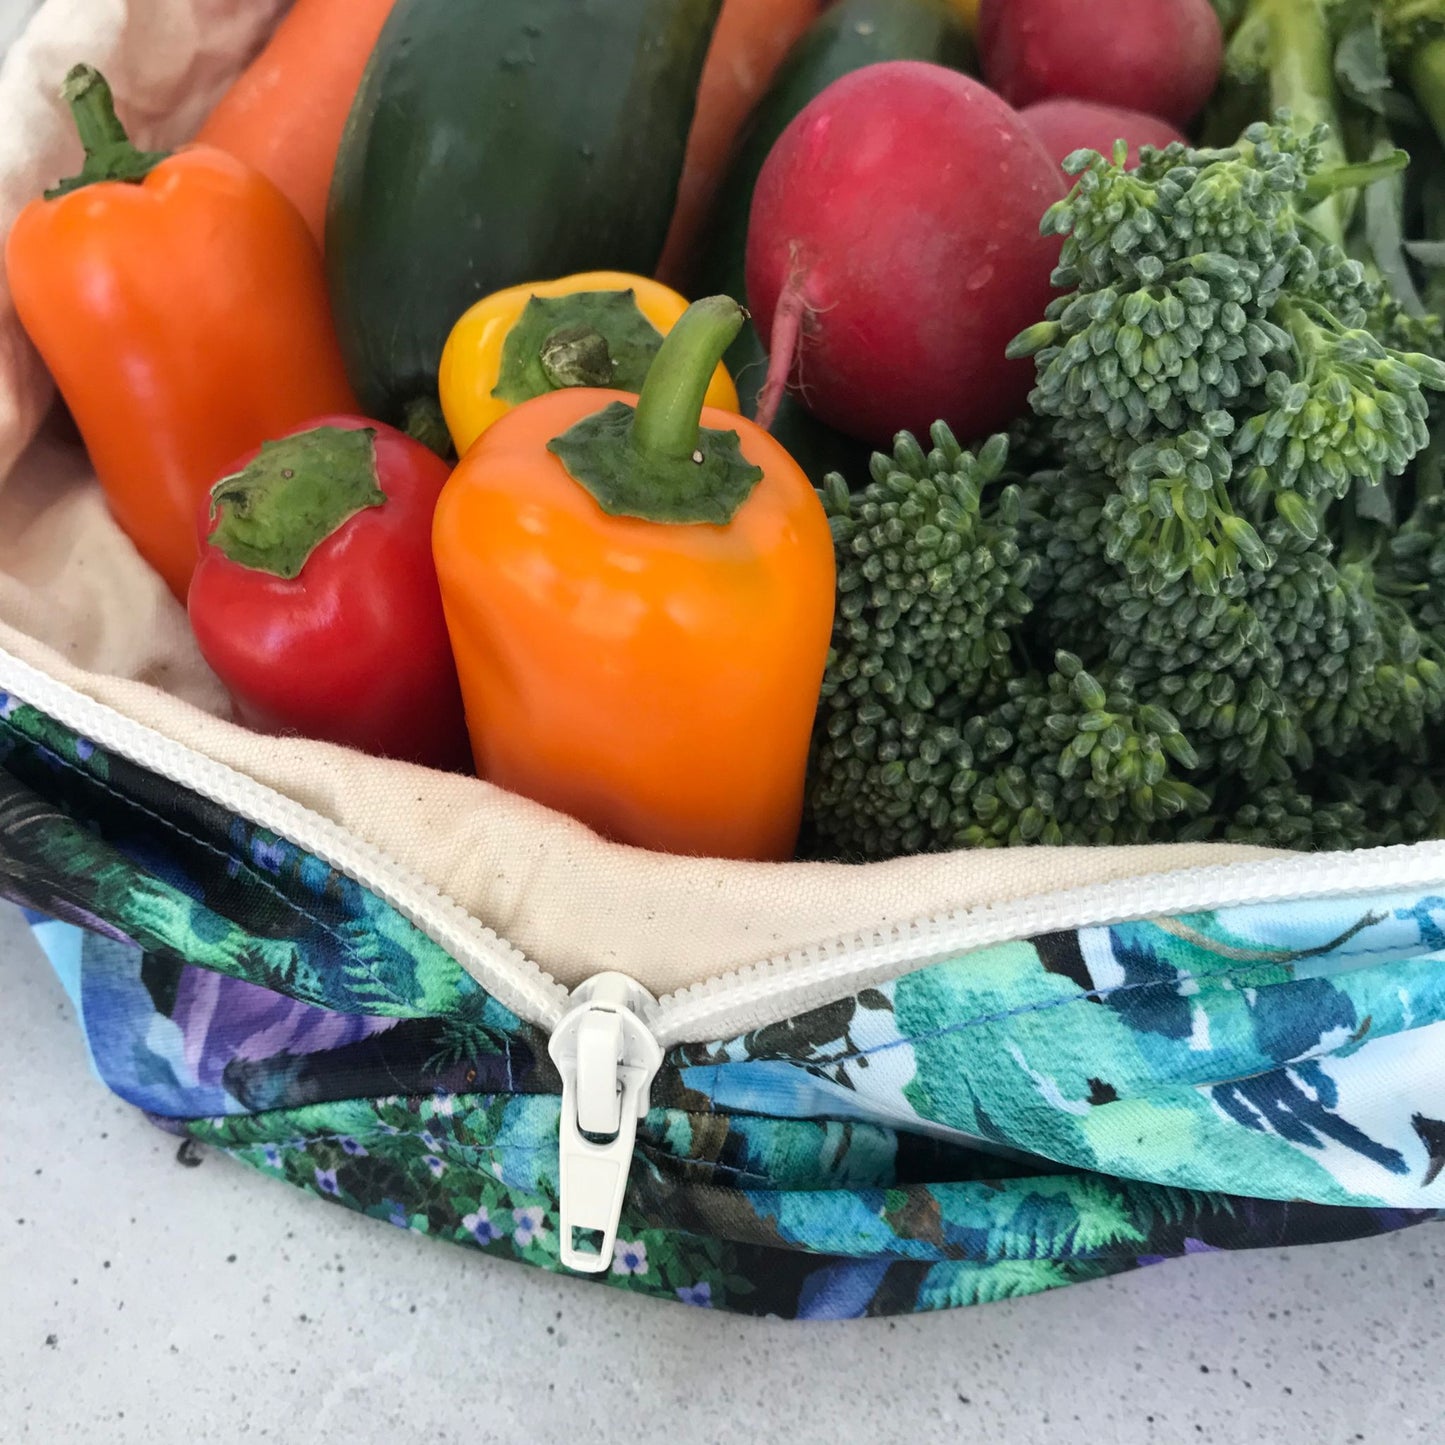 Produce Pod - reusable veggie bag for fridge - Tongass PRE-ORDER